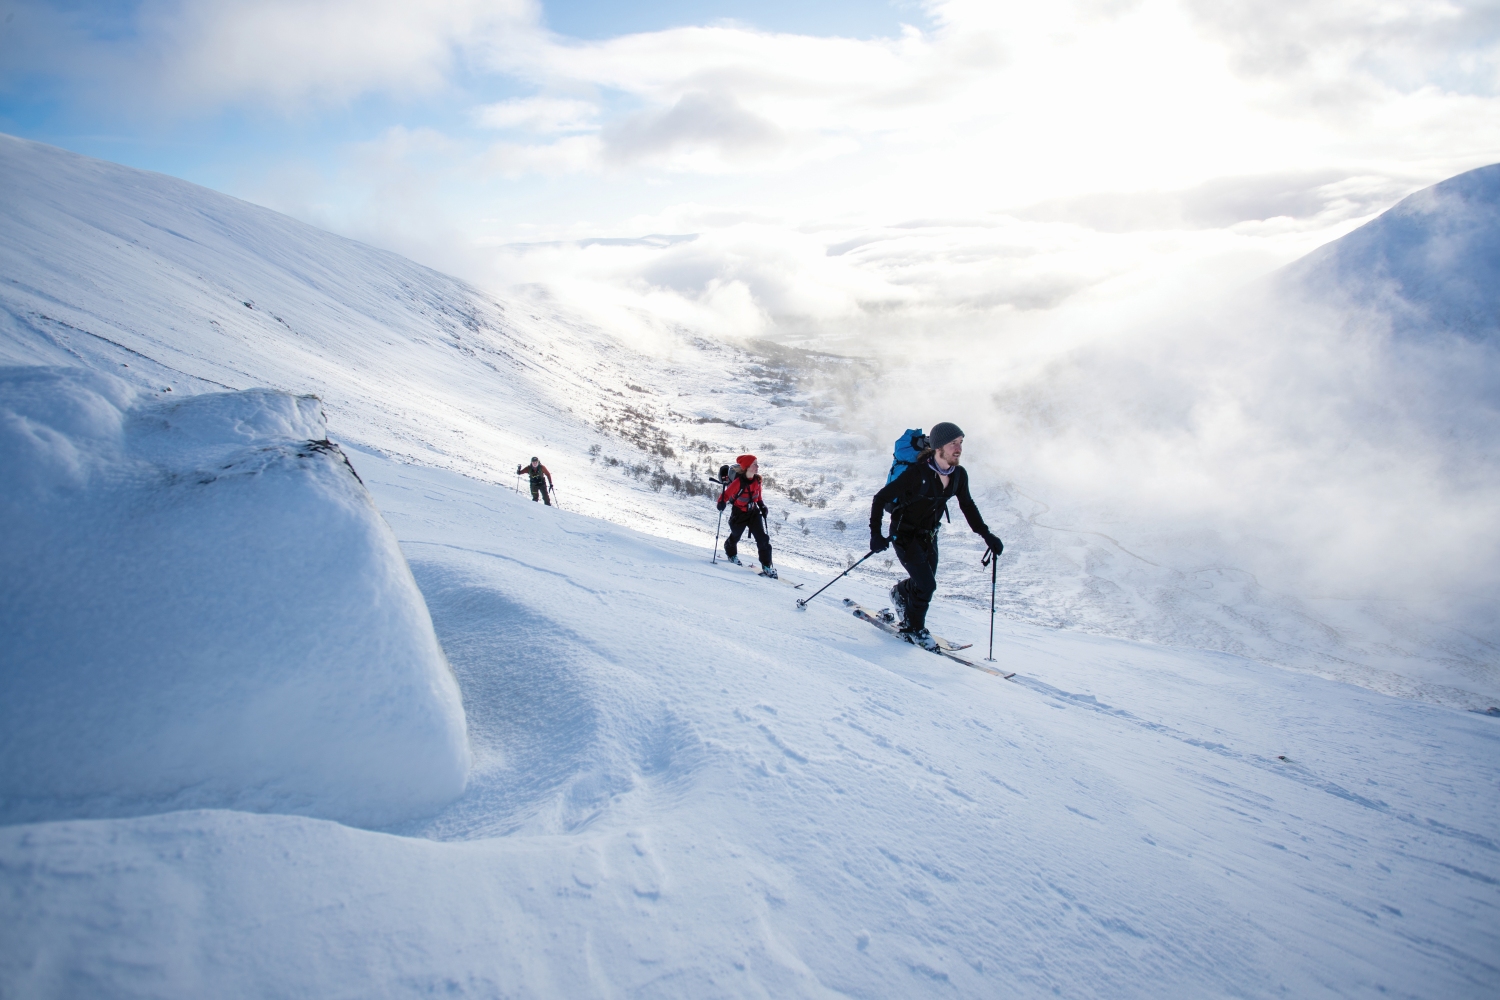 ski-touring-scotland-backcountry